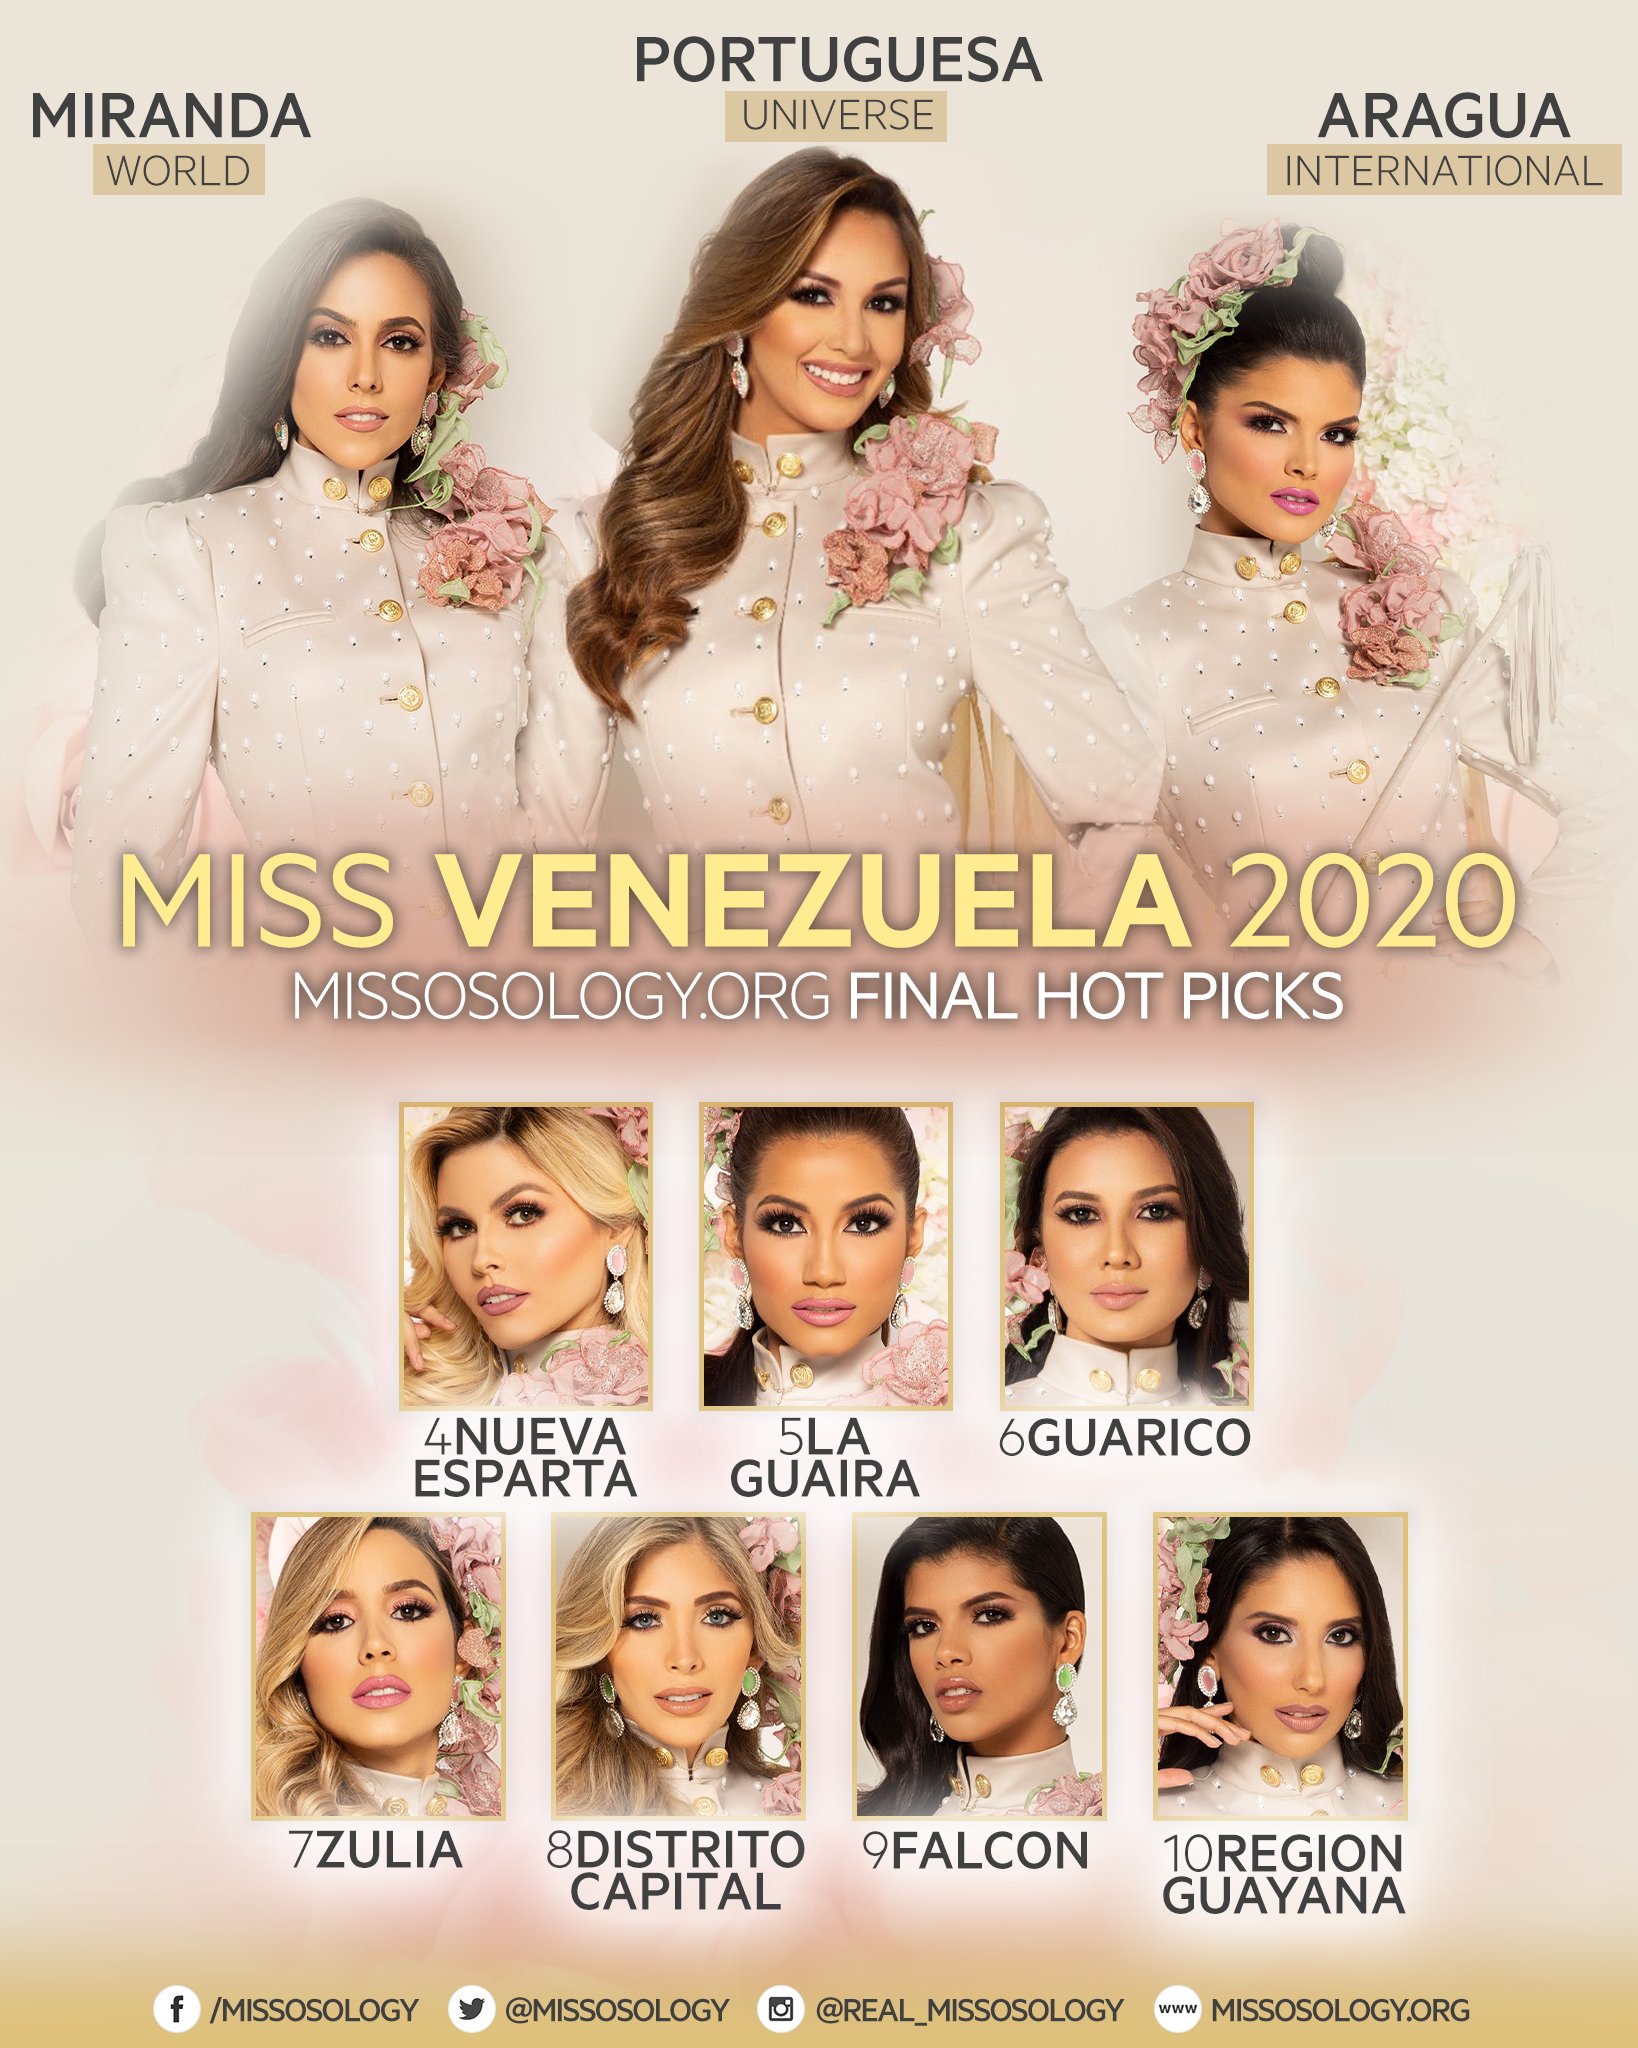 Miss Venezuela 2020 - Miss Venezuela 2020